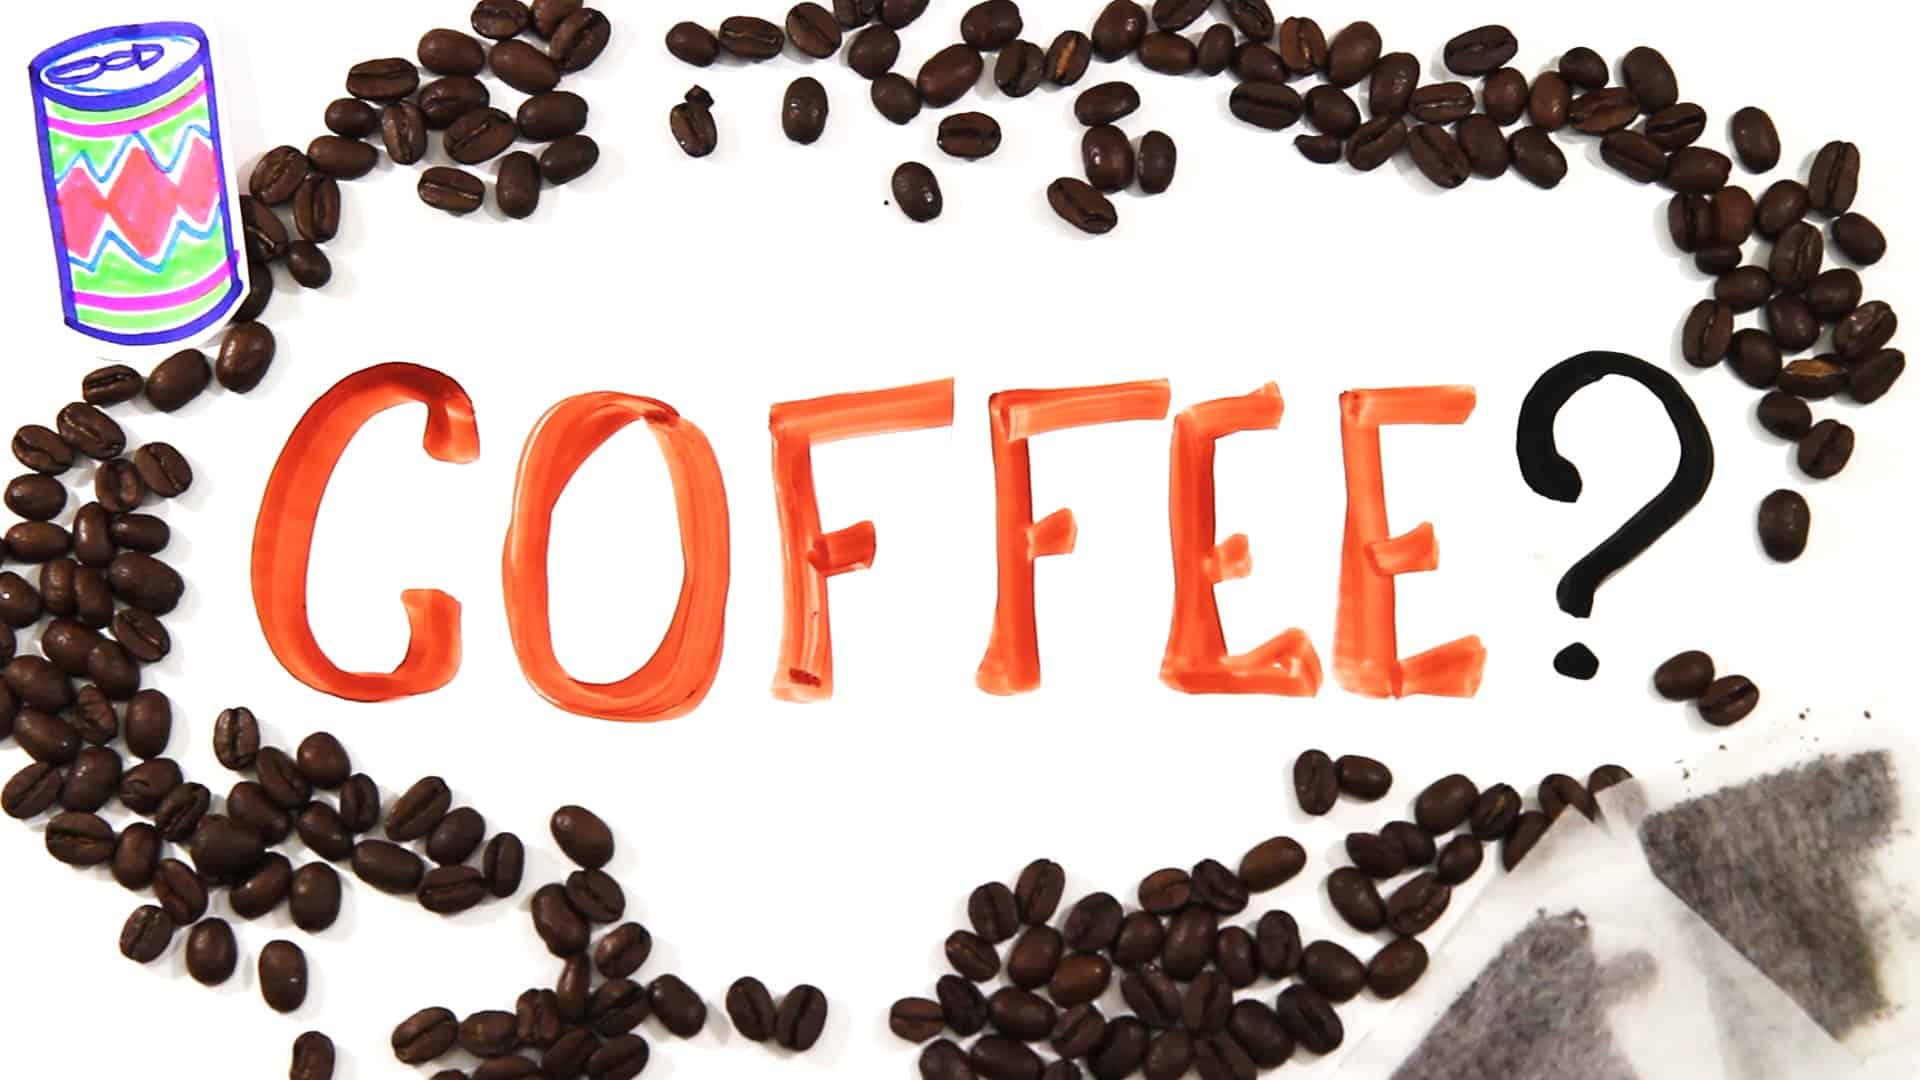 Pijete kávu správně?